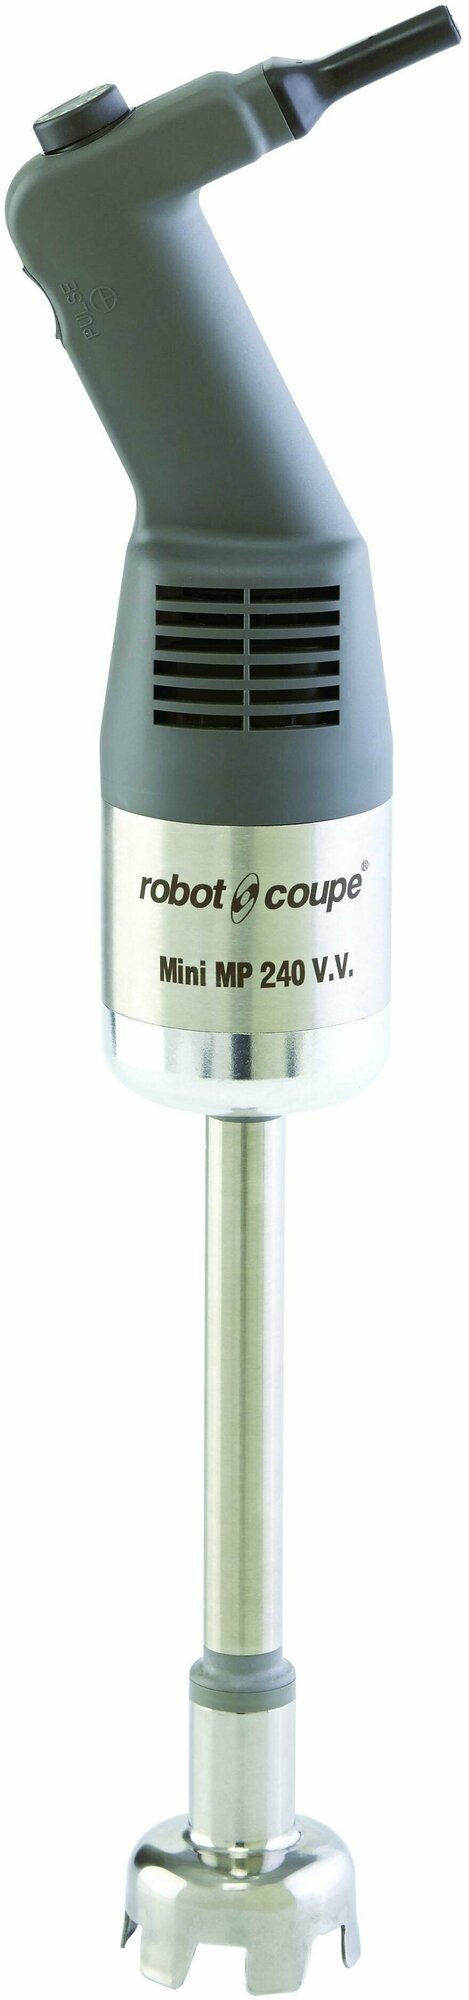 Миксер блендер ручной погружной ROBOT COUPE Mini MP 240 V.V.